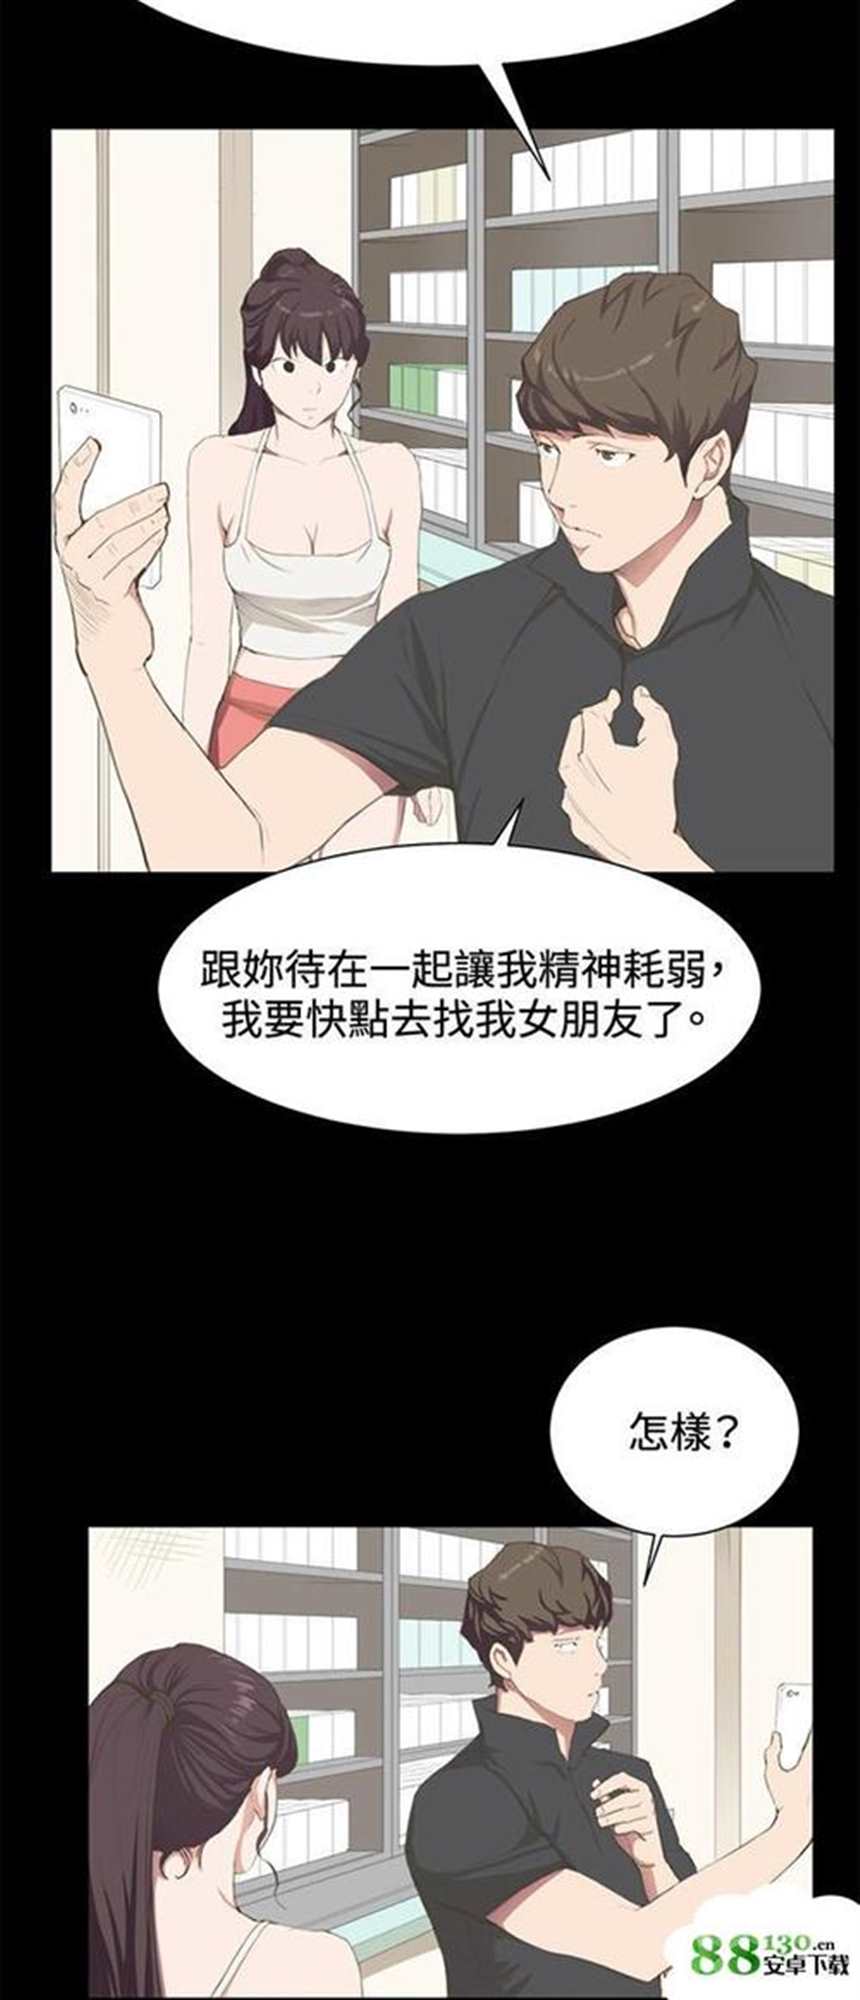 韩国漫画《便利店情缘》/《爱情店到店》 (8)(点击浏览下一张趣图)